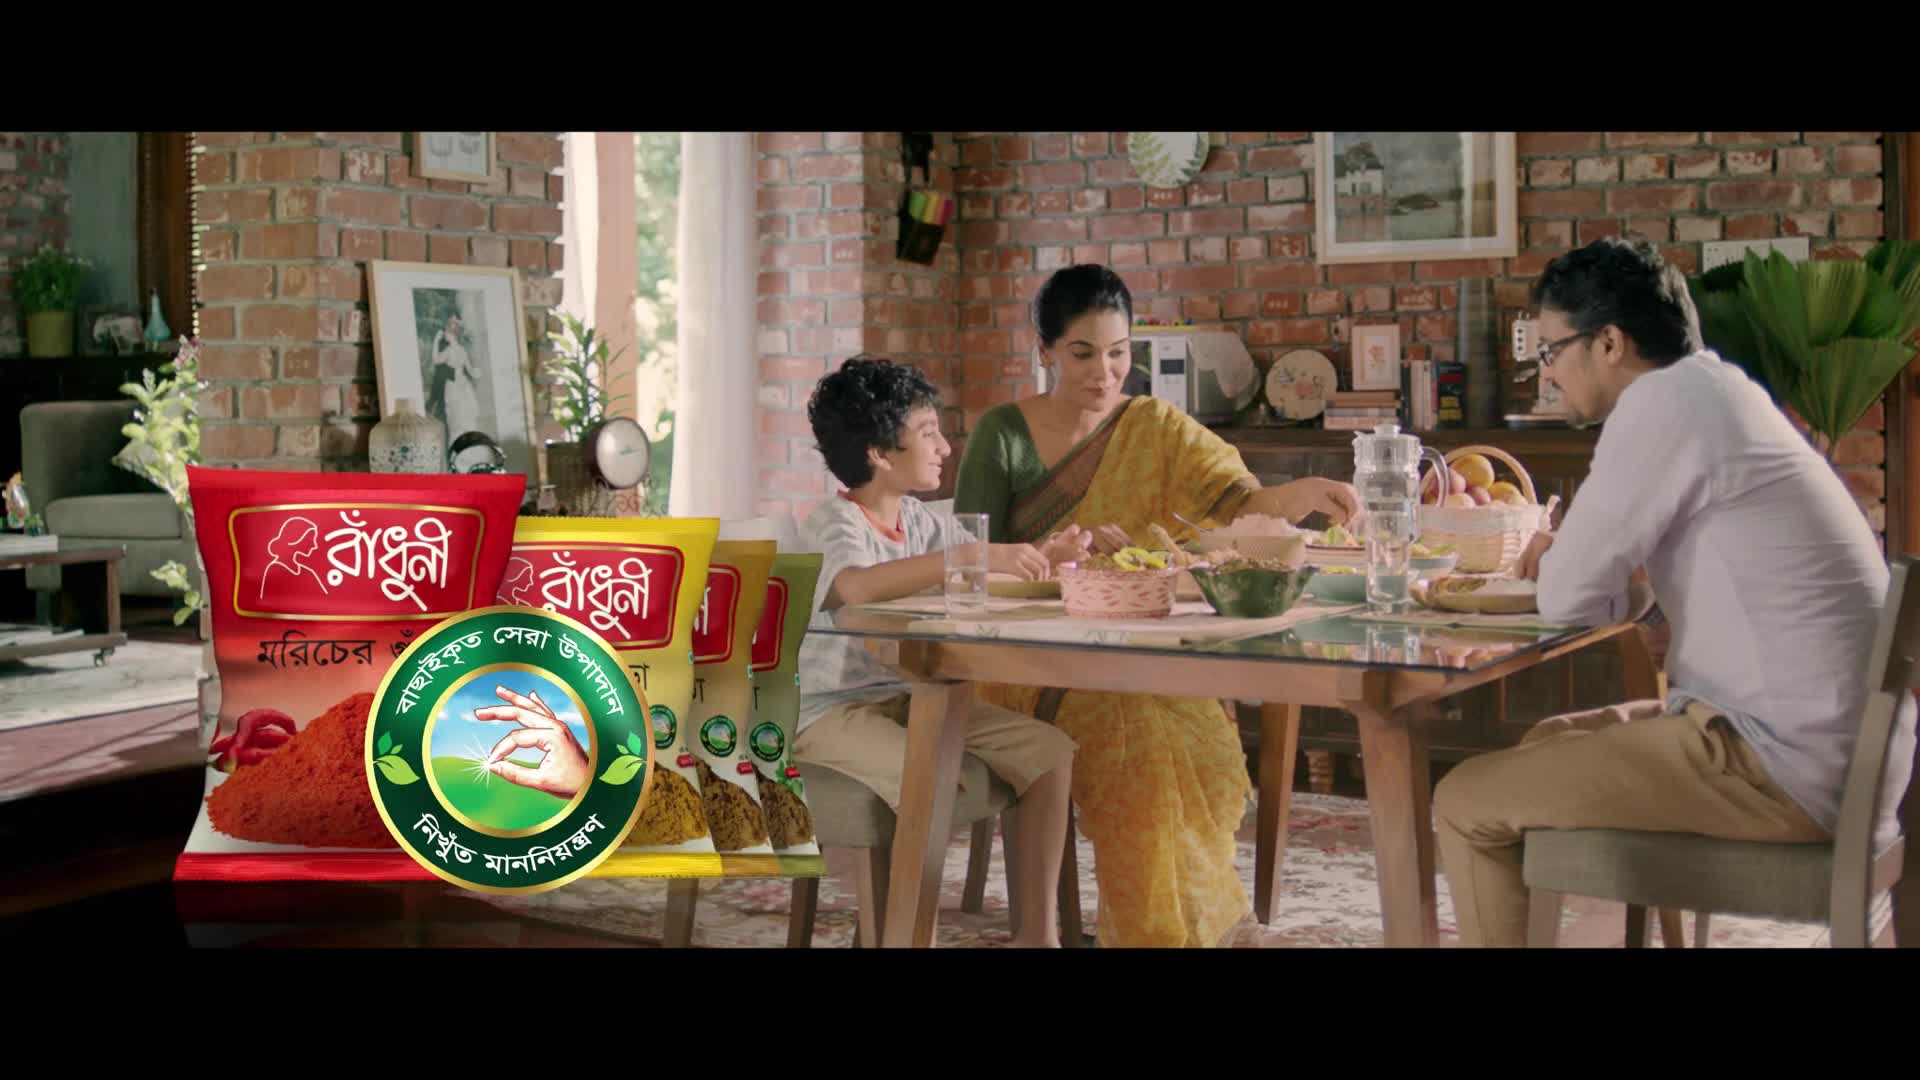 Radhuni Basic Spice - Amar Radhuni Ami Jani Campaign